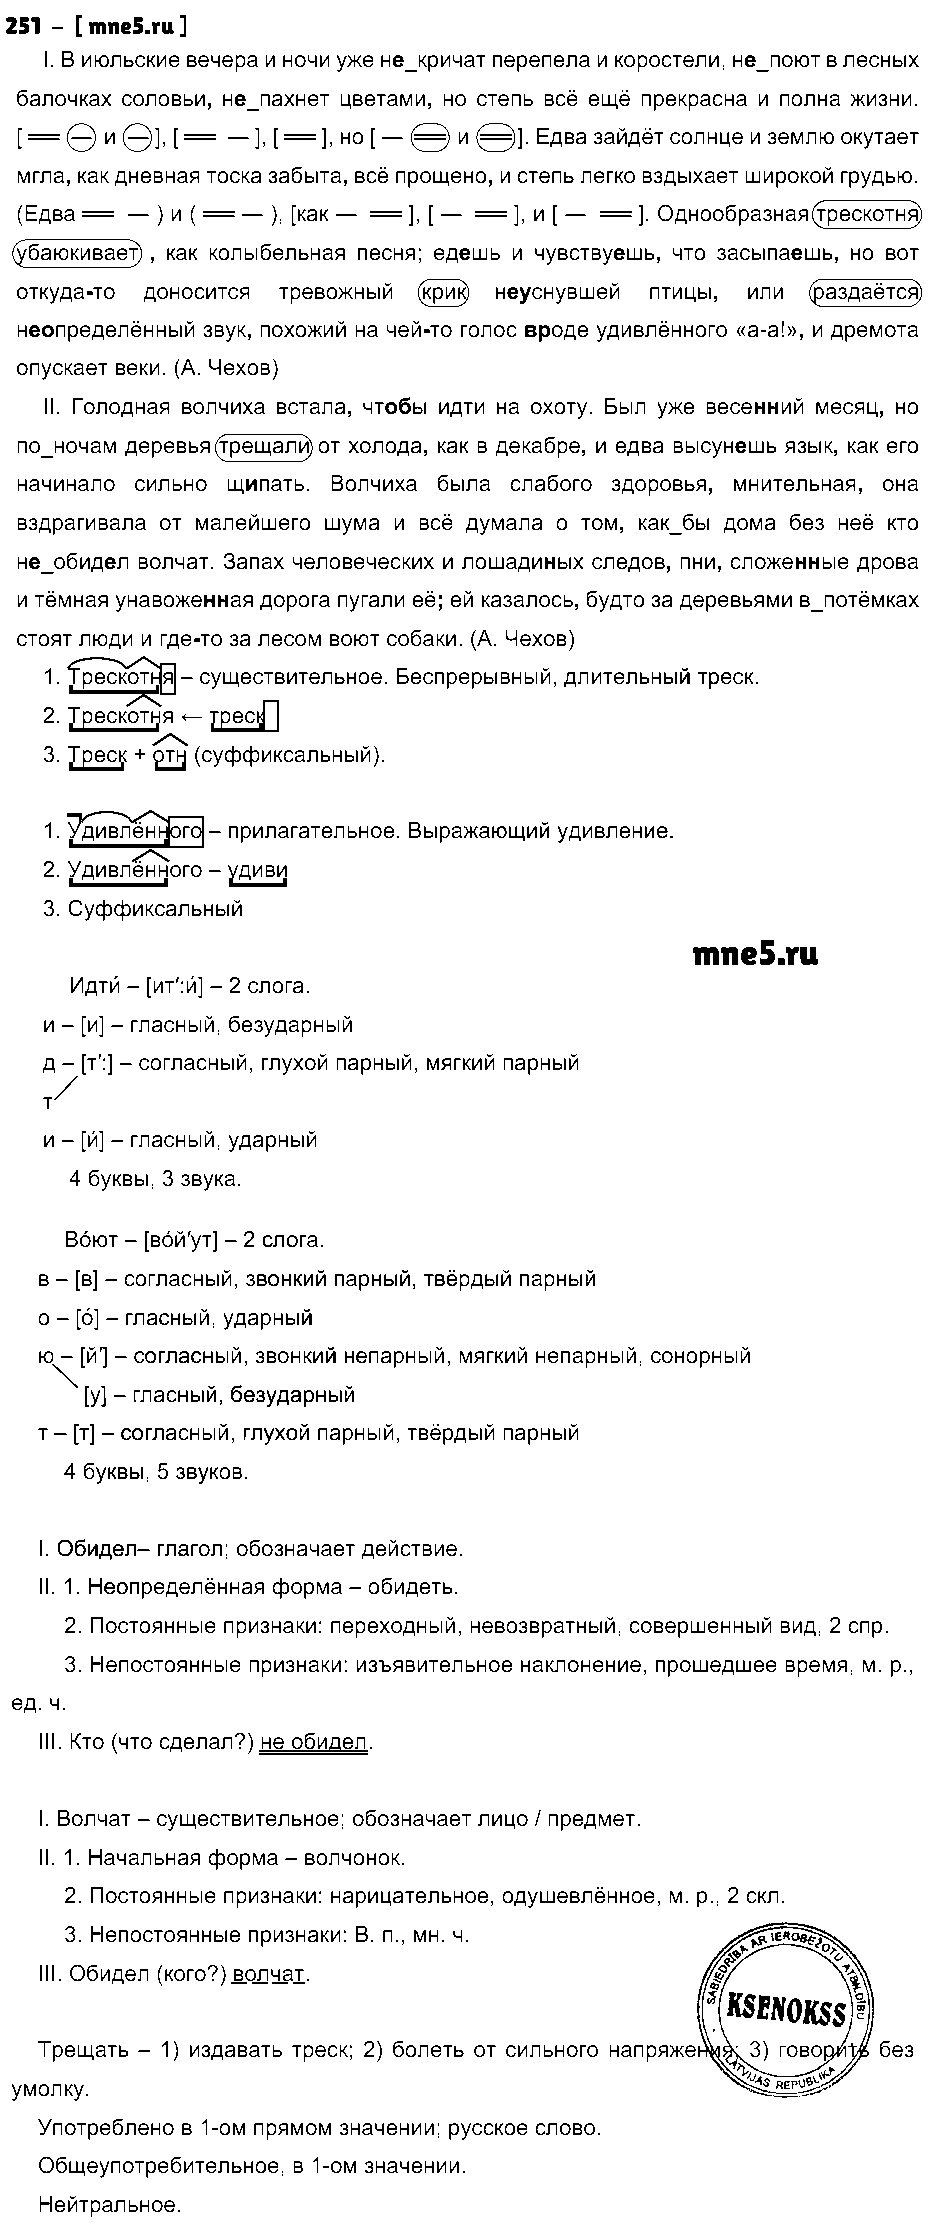 ГДЗ Русский язык 9 класс - 251